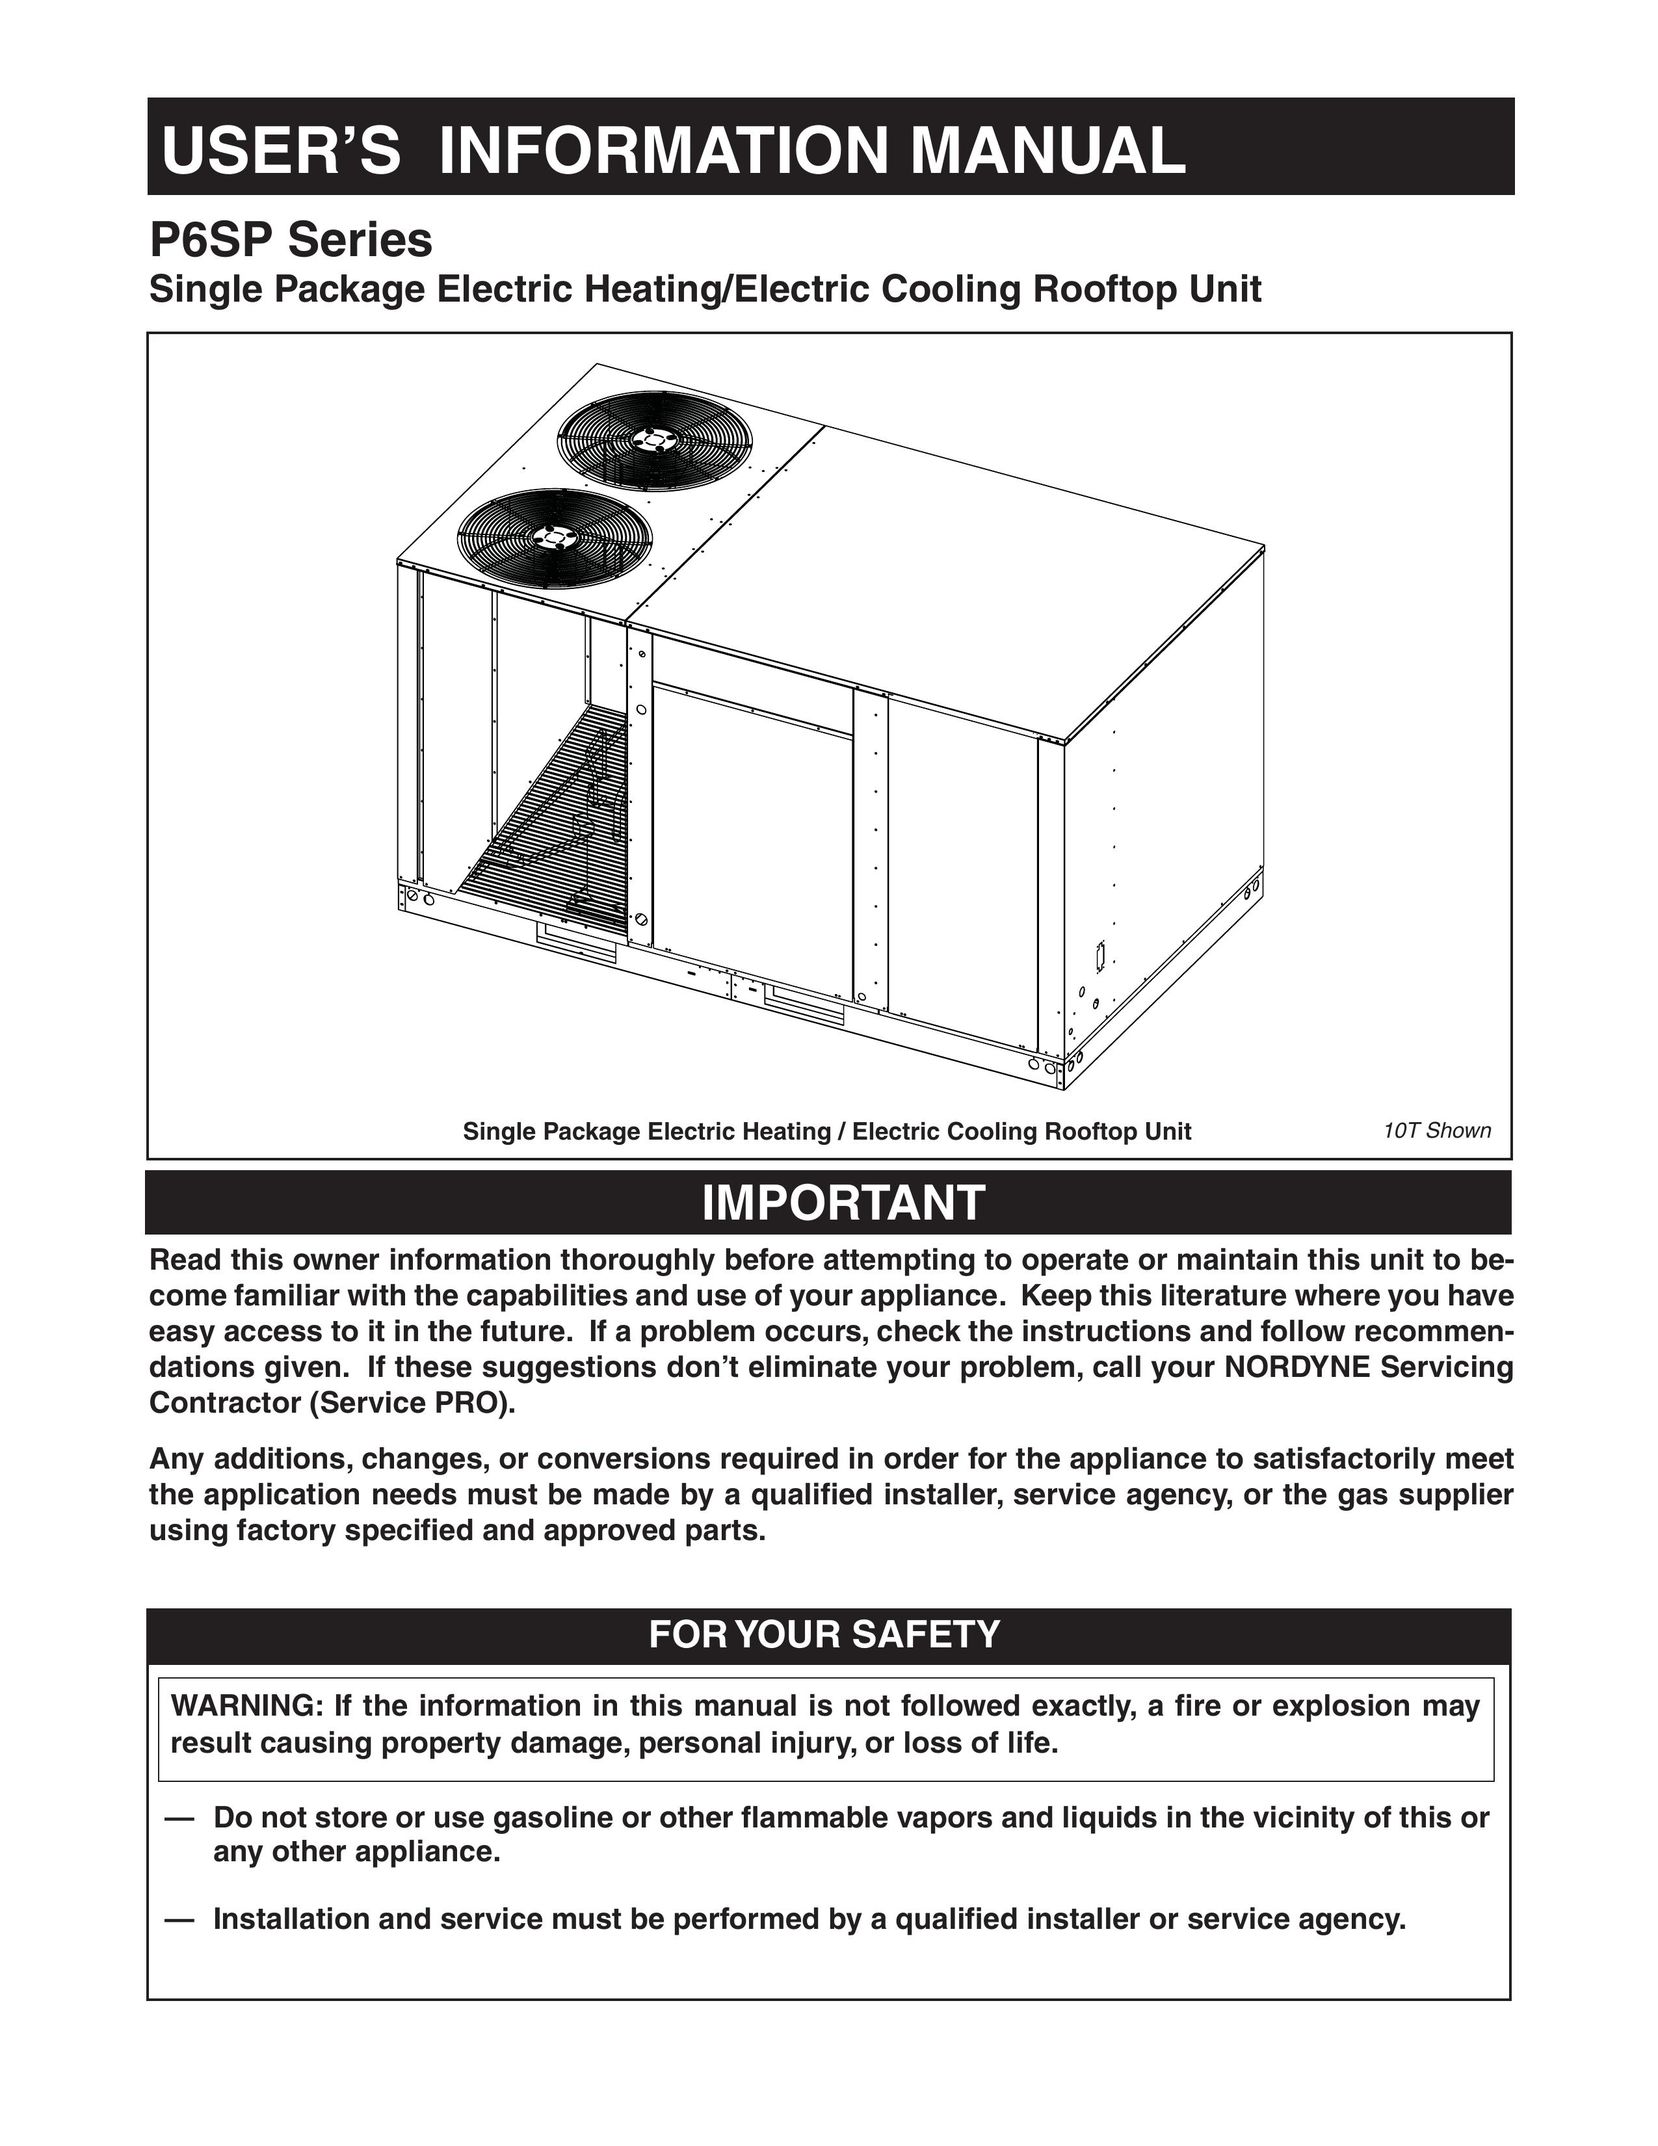 Nordyne P6SP Series Heating System User Manual